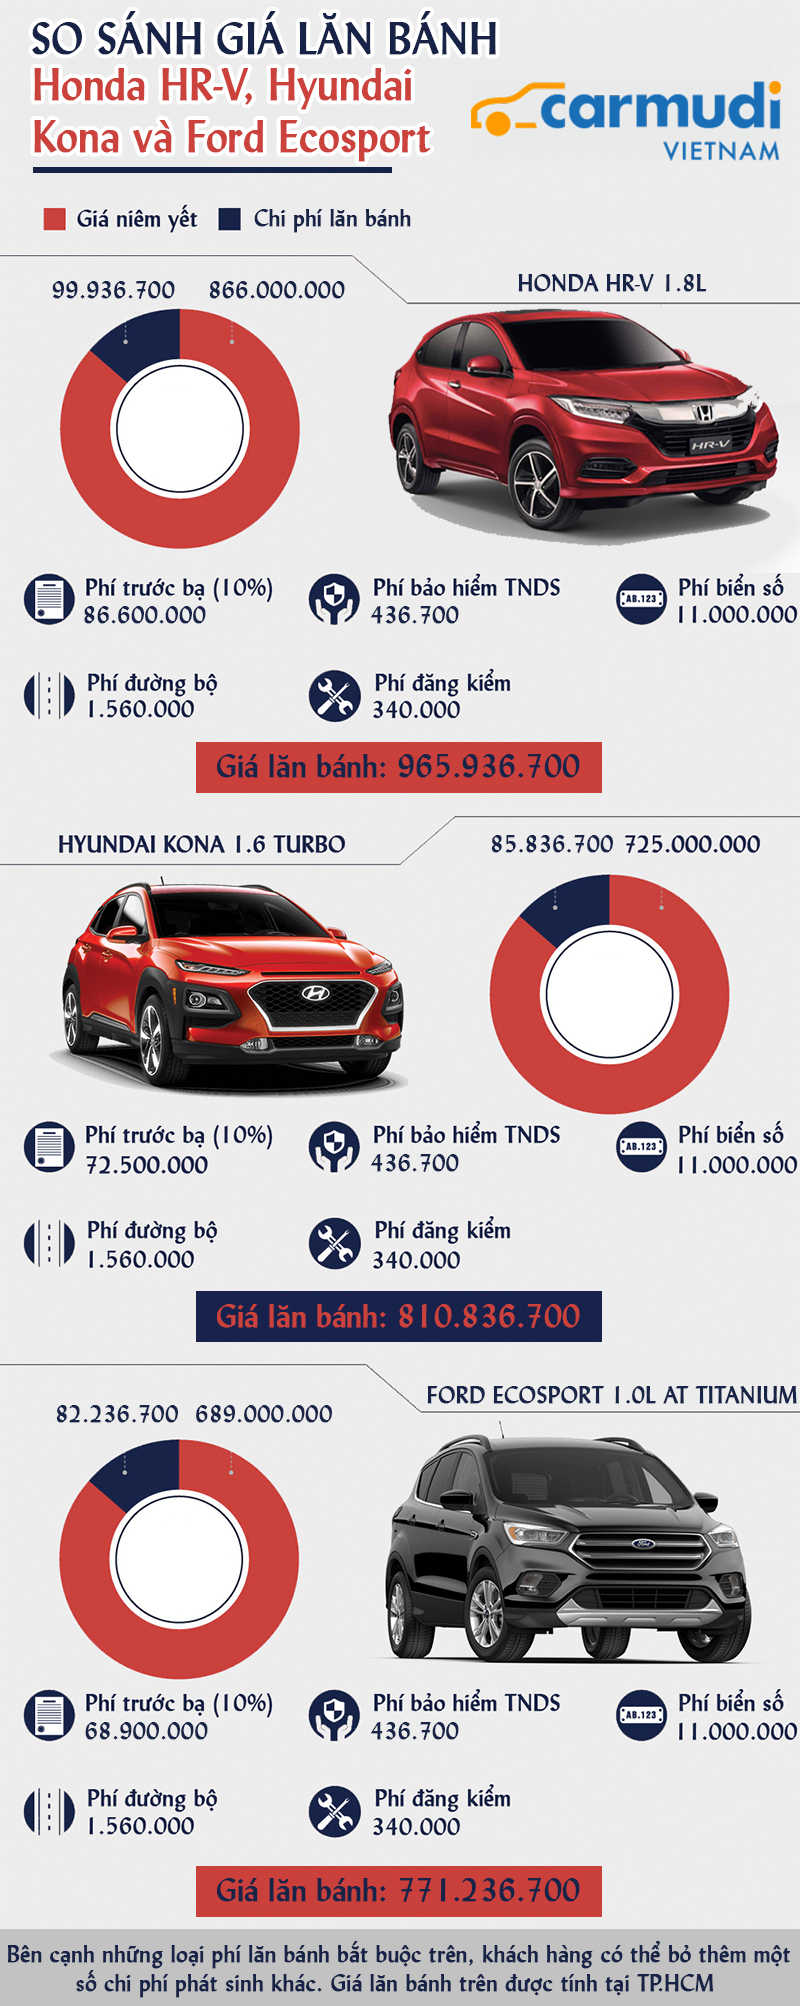 [Infographic] - So sánh giá lăn bánh Honda HR-V - Hyundai Kona và Ford Ecosport